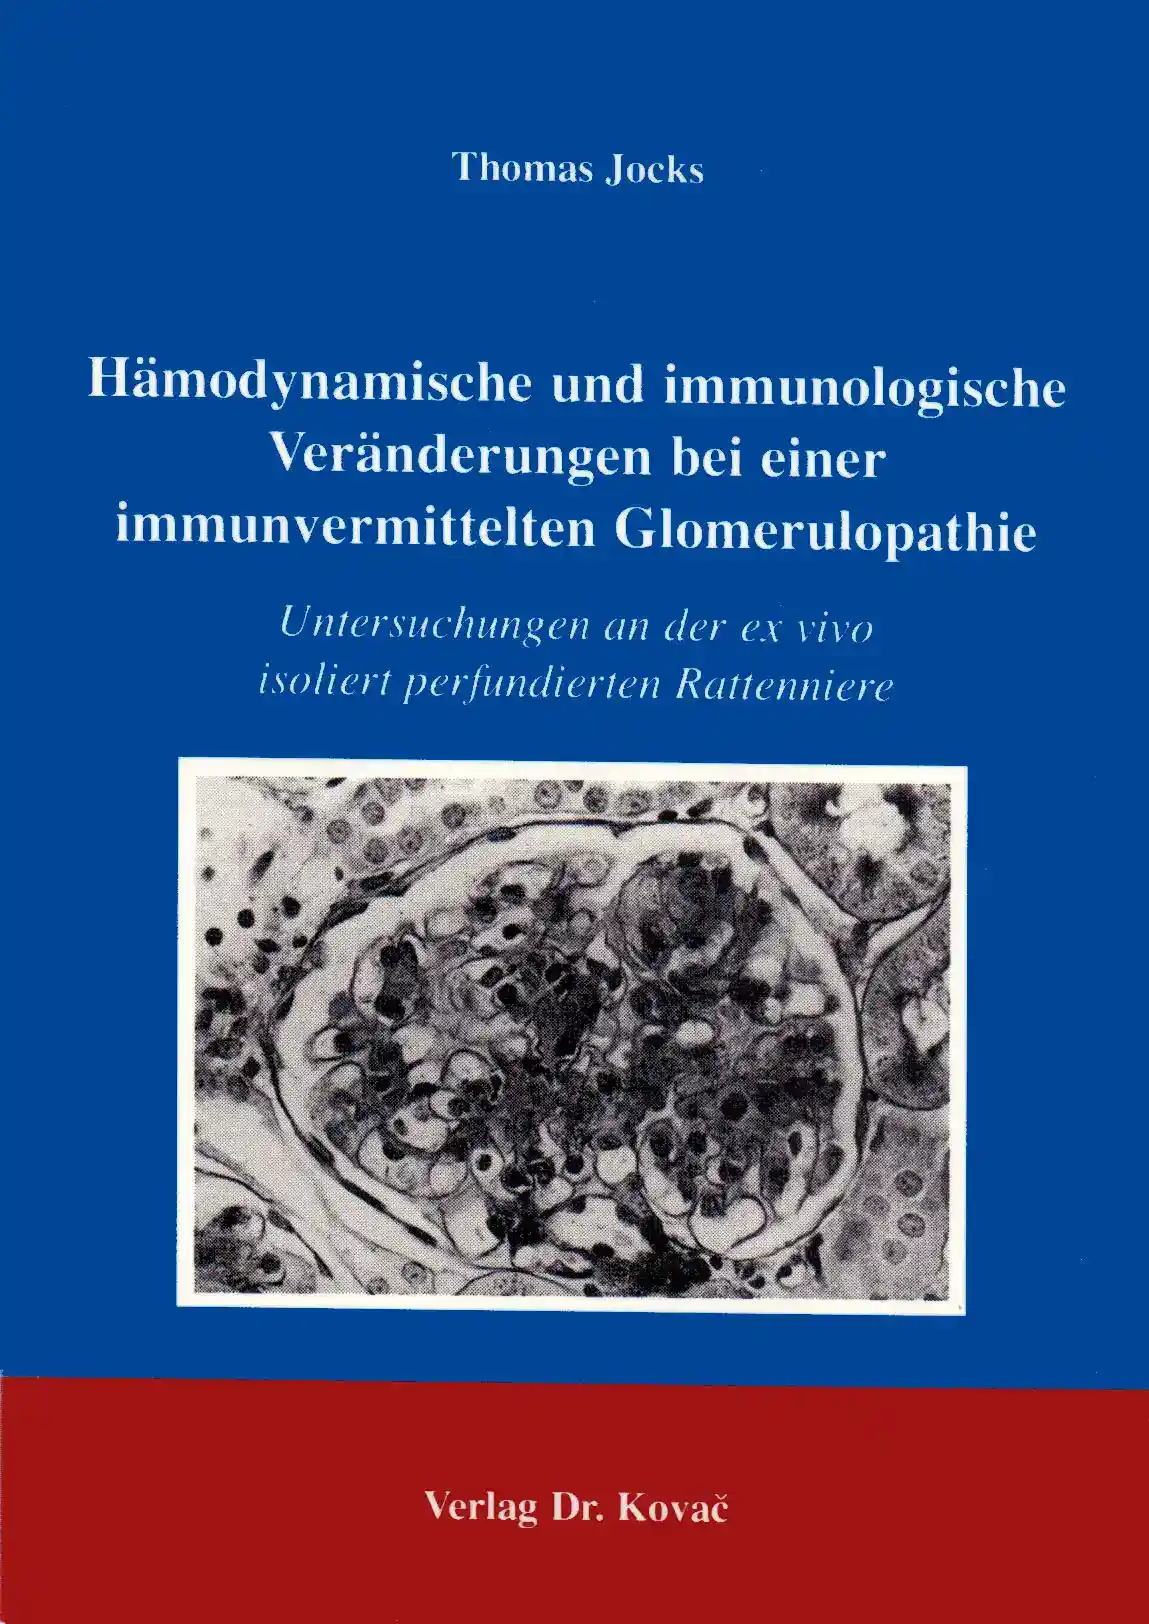  Forschungsarbeit: Hämodynamische und immunologische Veränderungen bei einer immunvermittelten Glomerulopathie